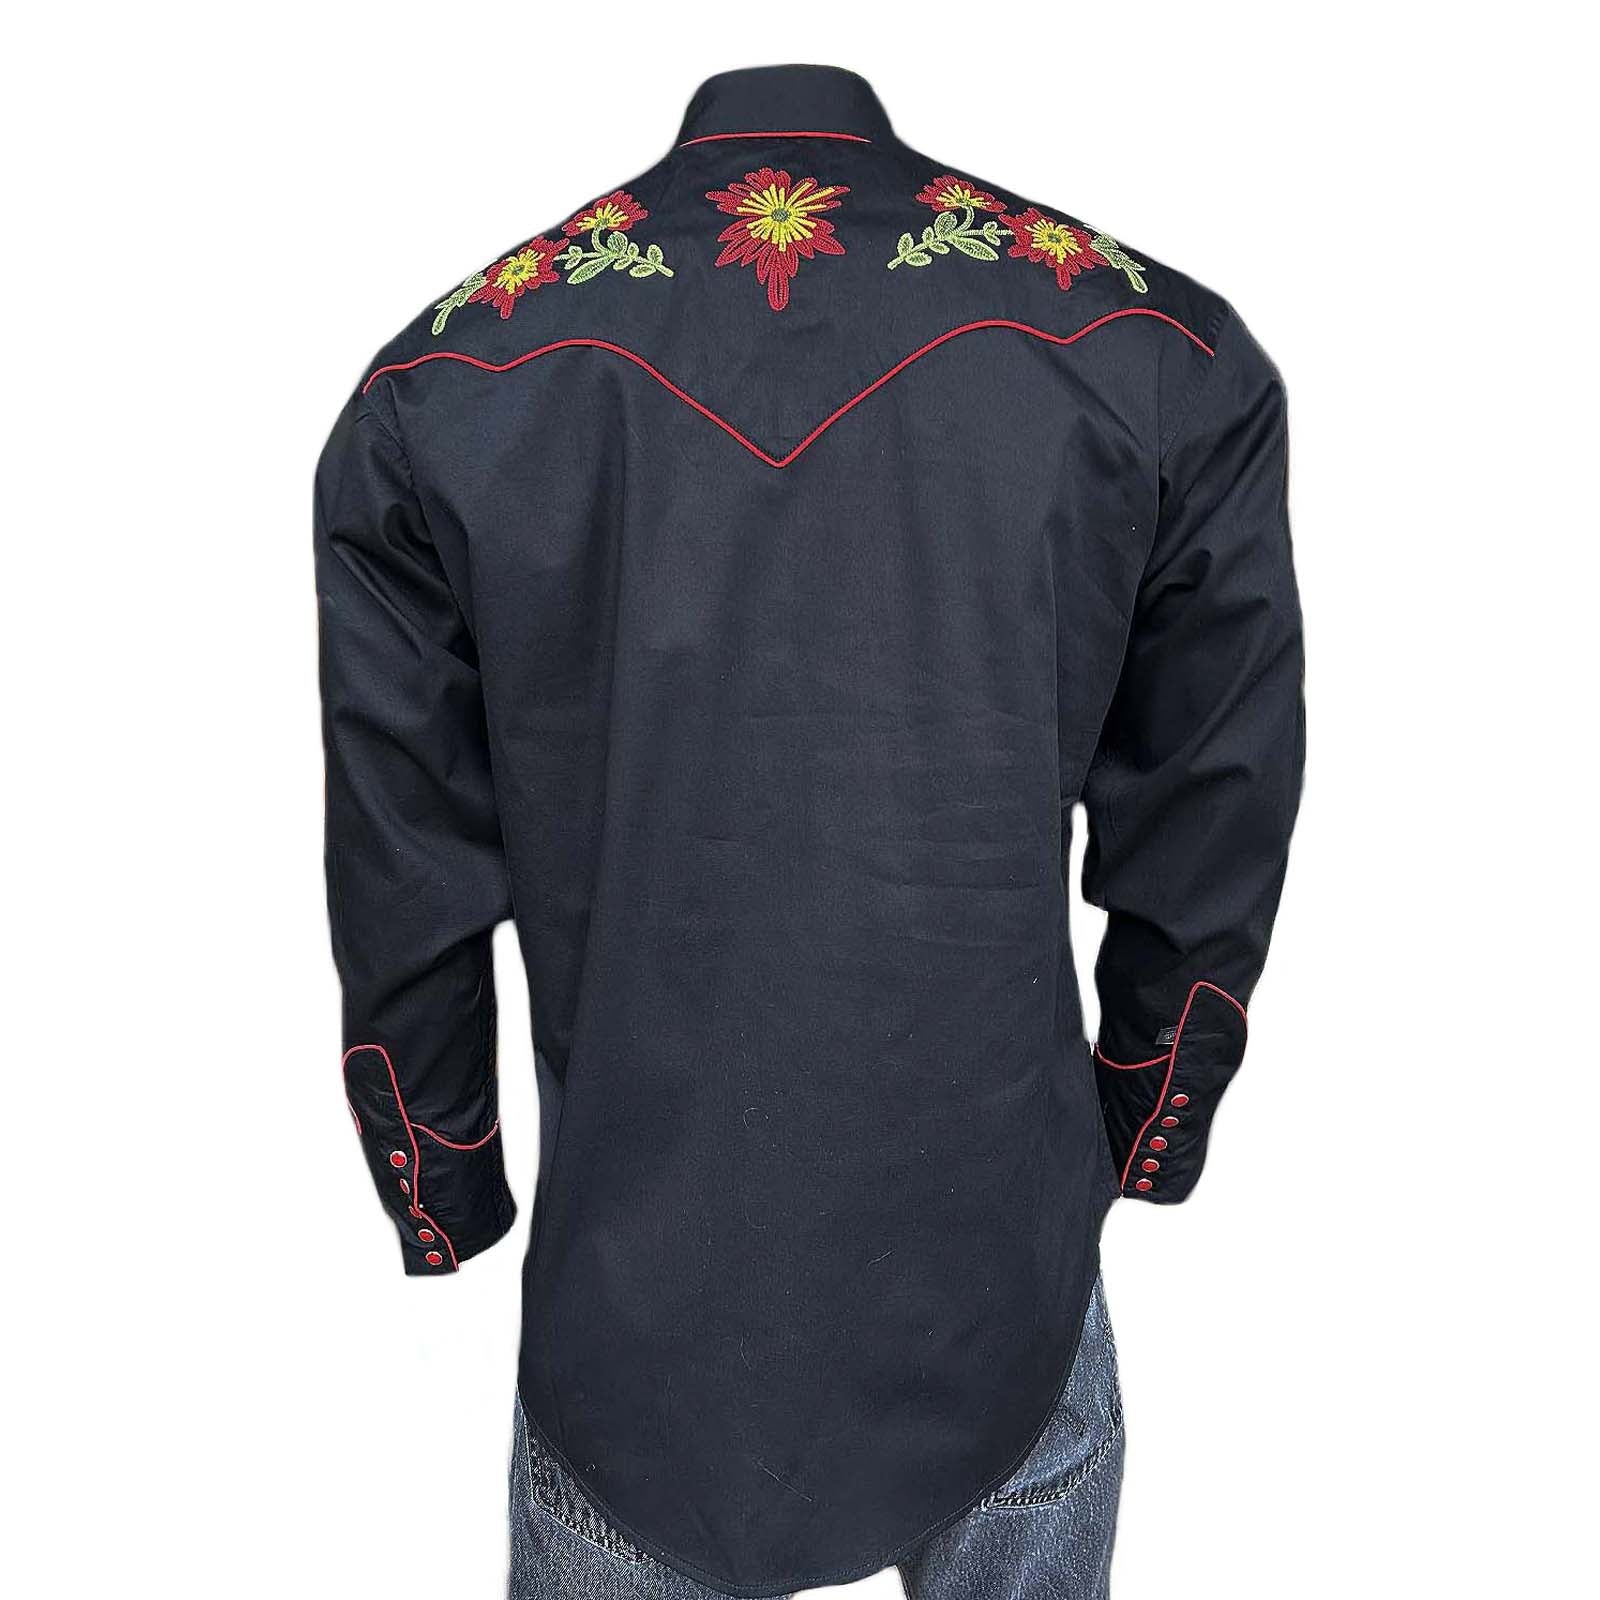 Men's Vintage Floral Embroidered Western Shirt